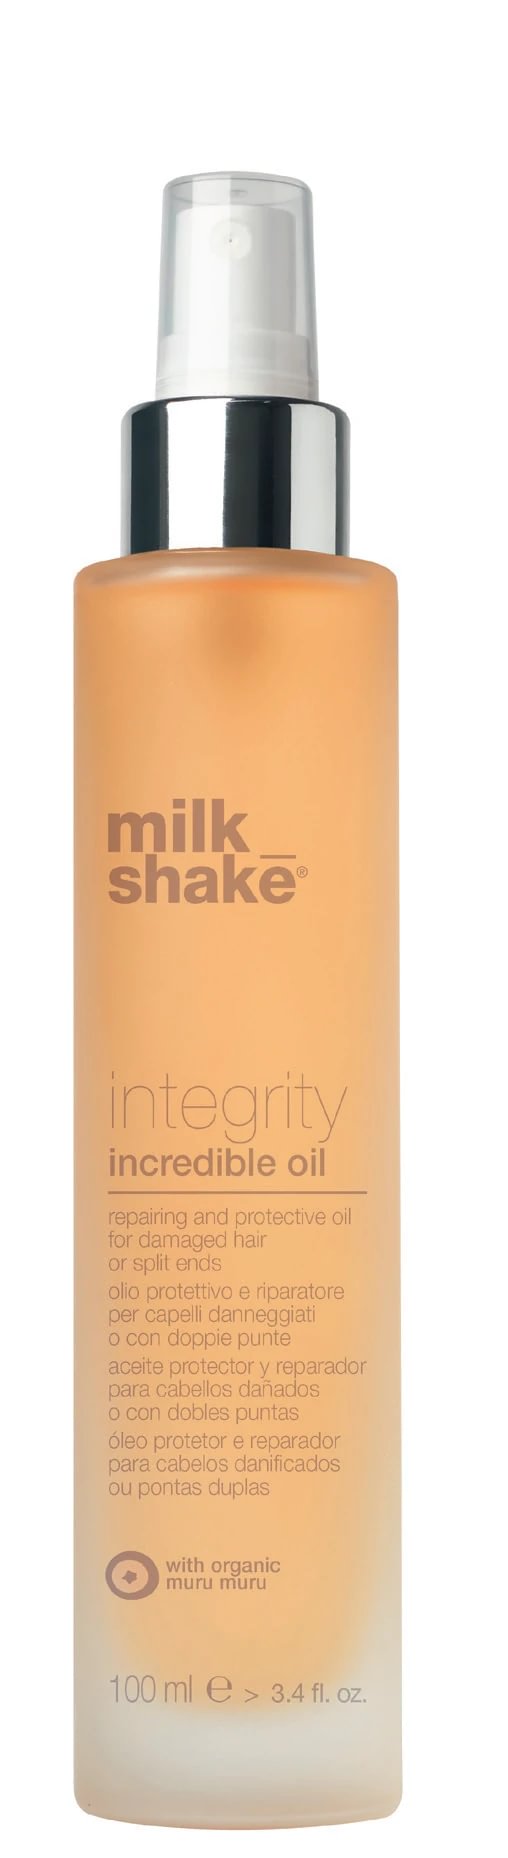 Milk_Shake Integrity Невероятное масло для волос 100 мл